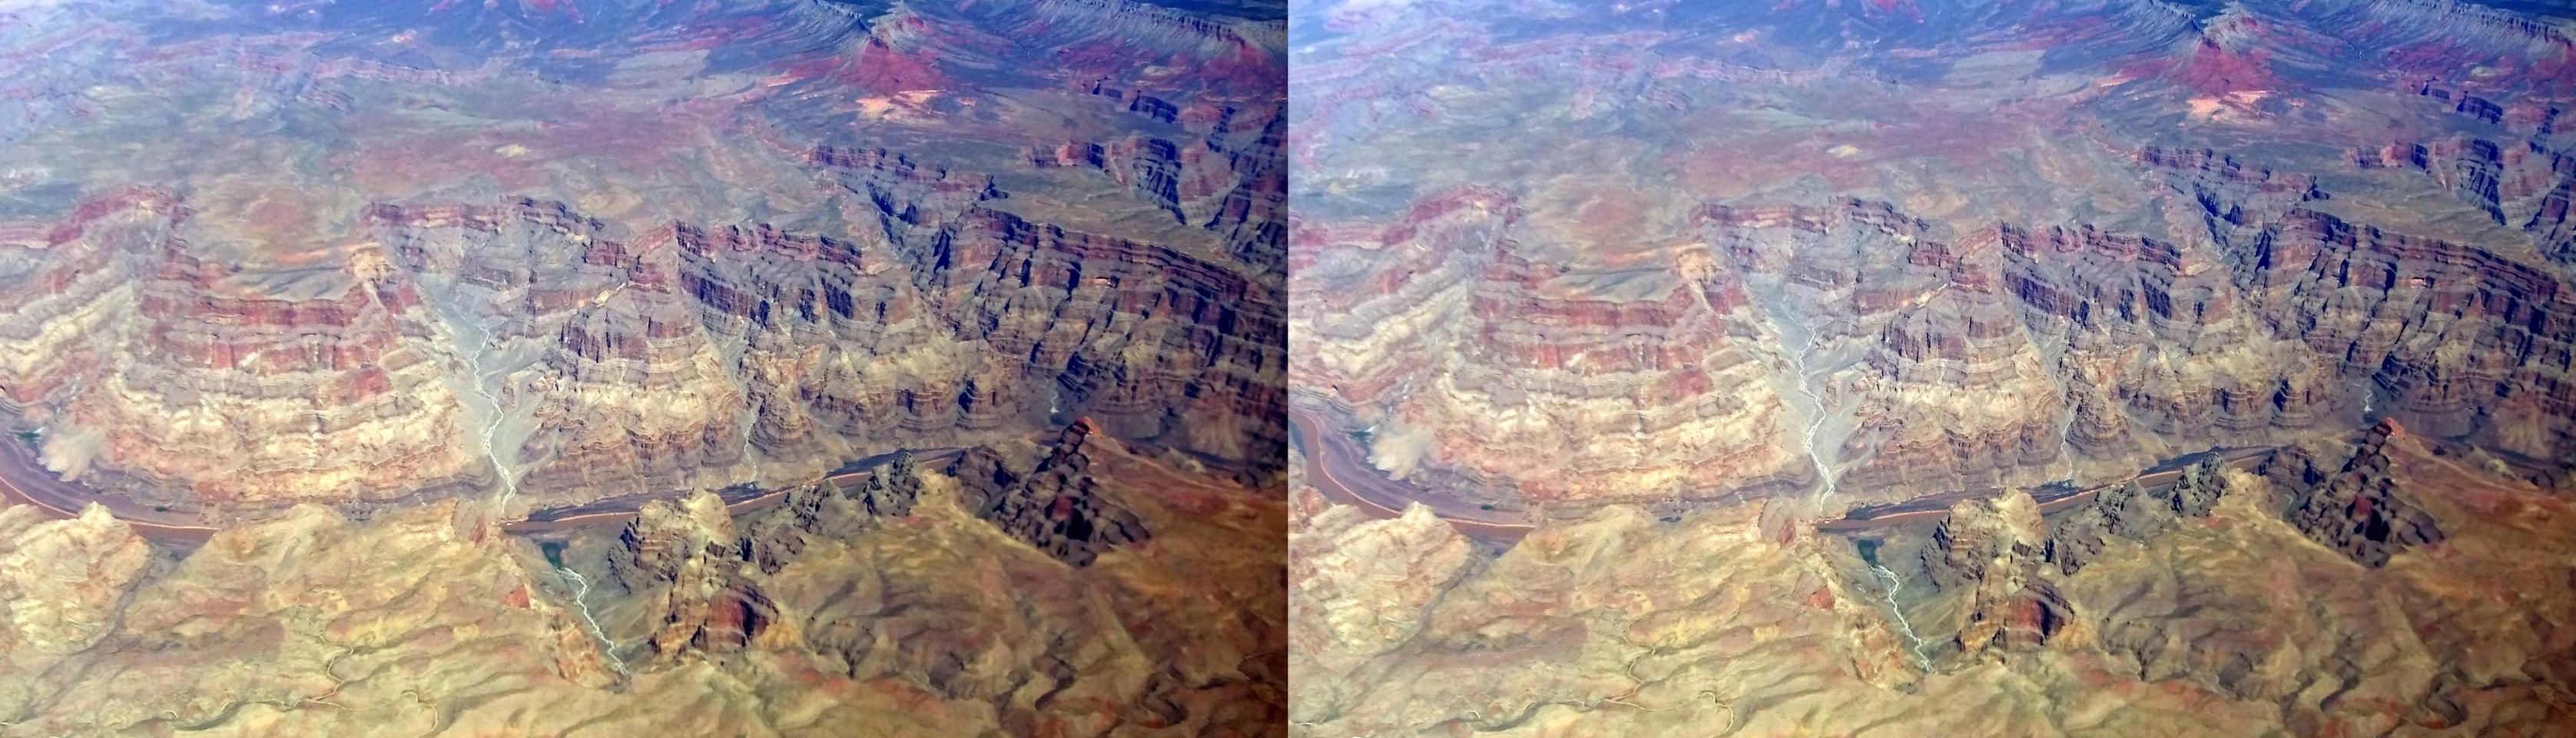 Aerial - Colorado River Canyon